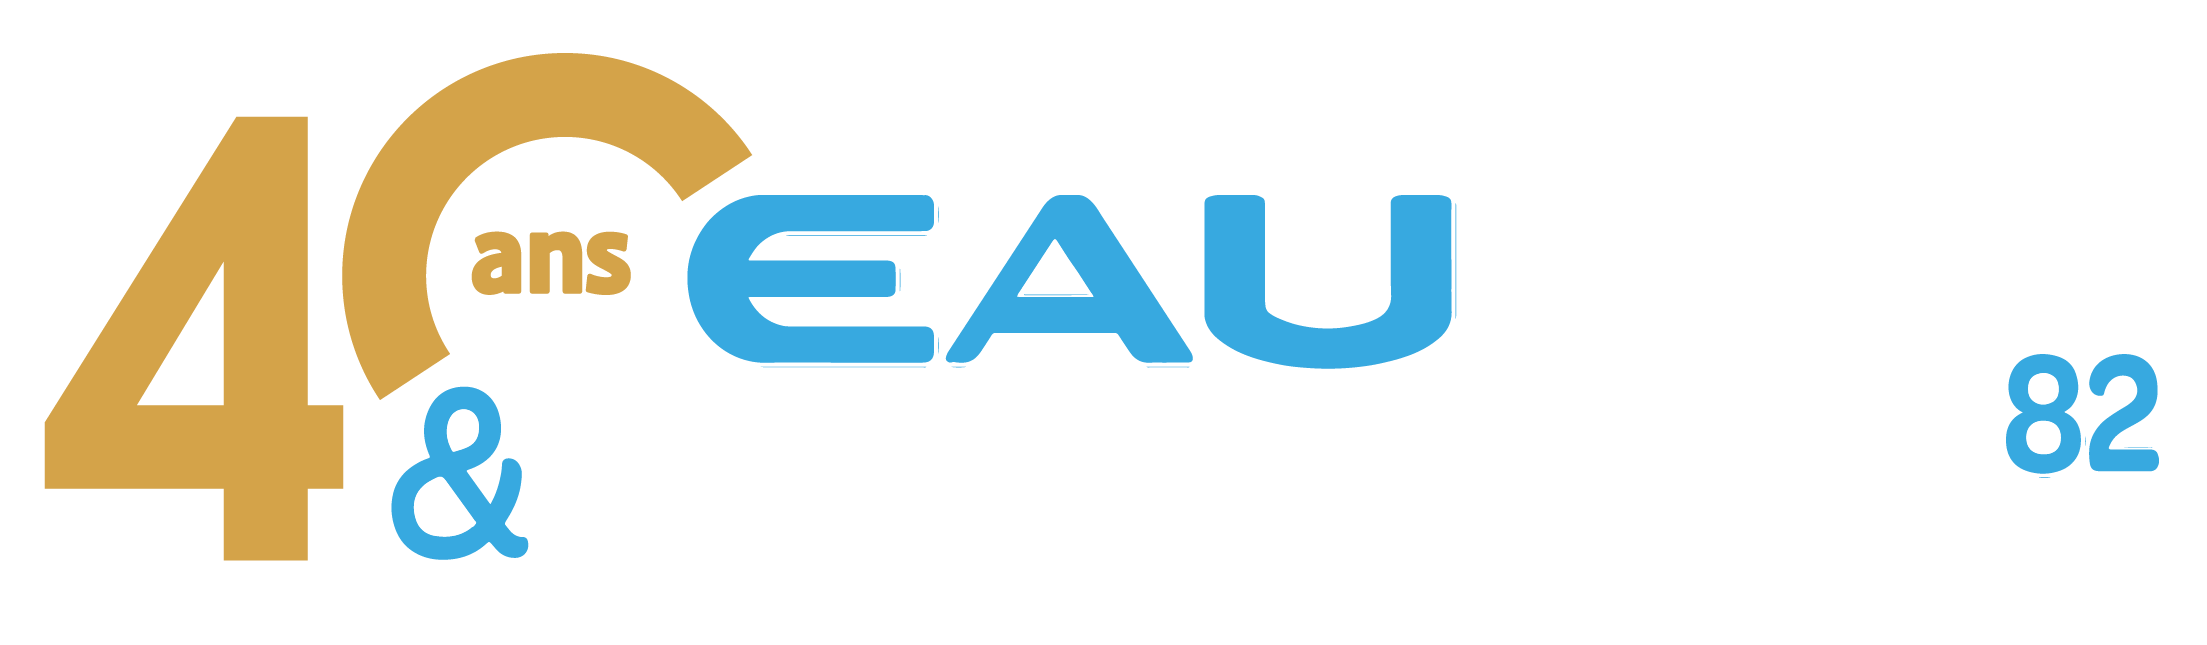 logo Eau et Technique 82 - 40 ans